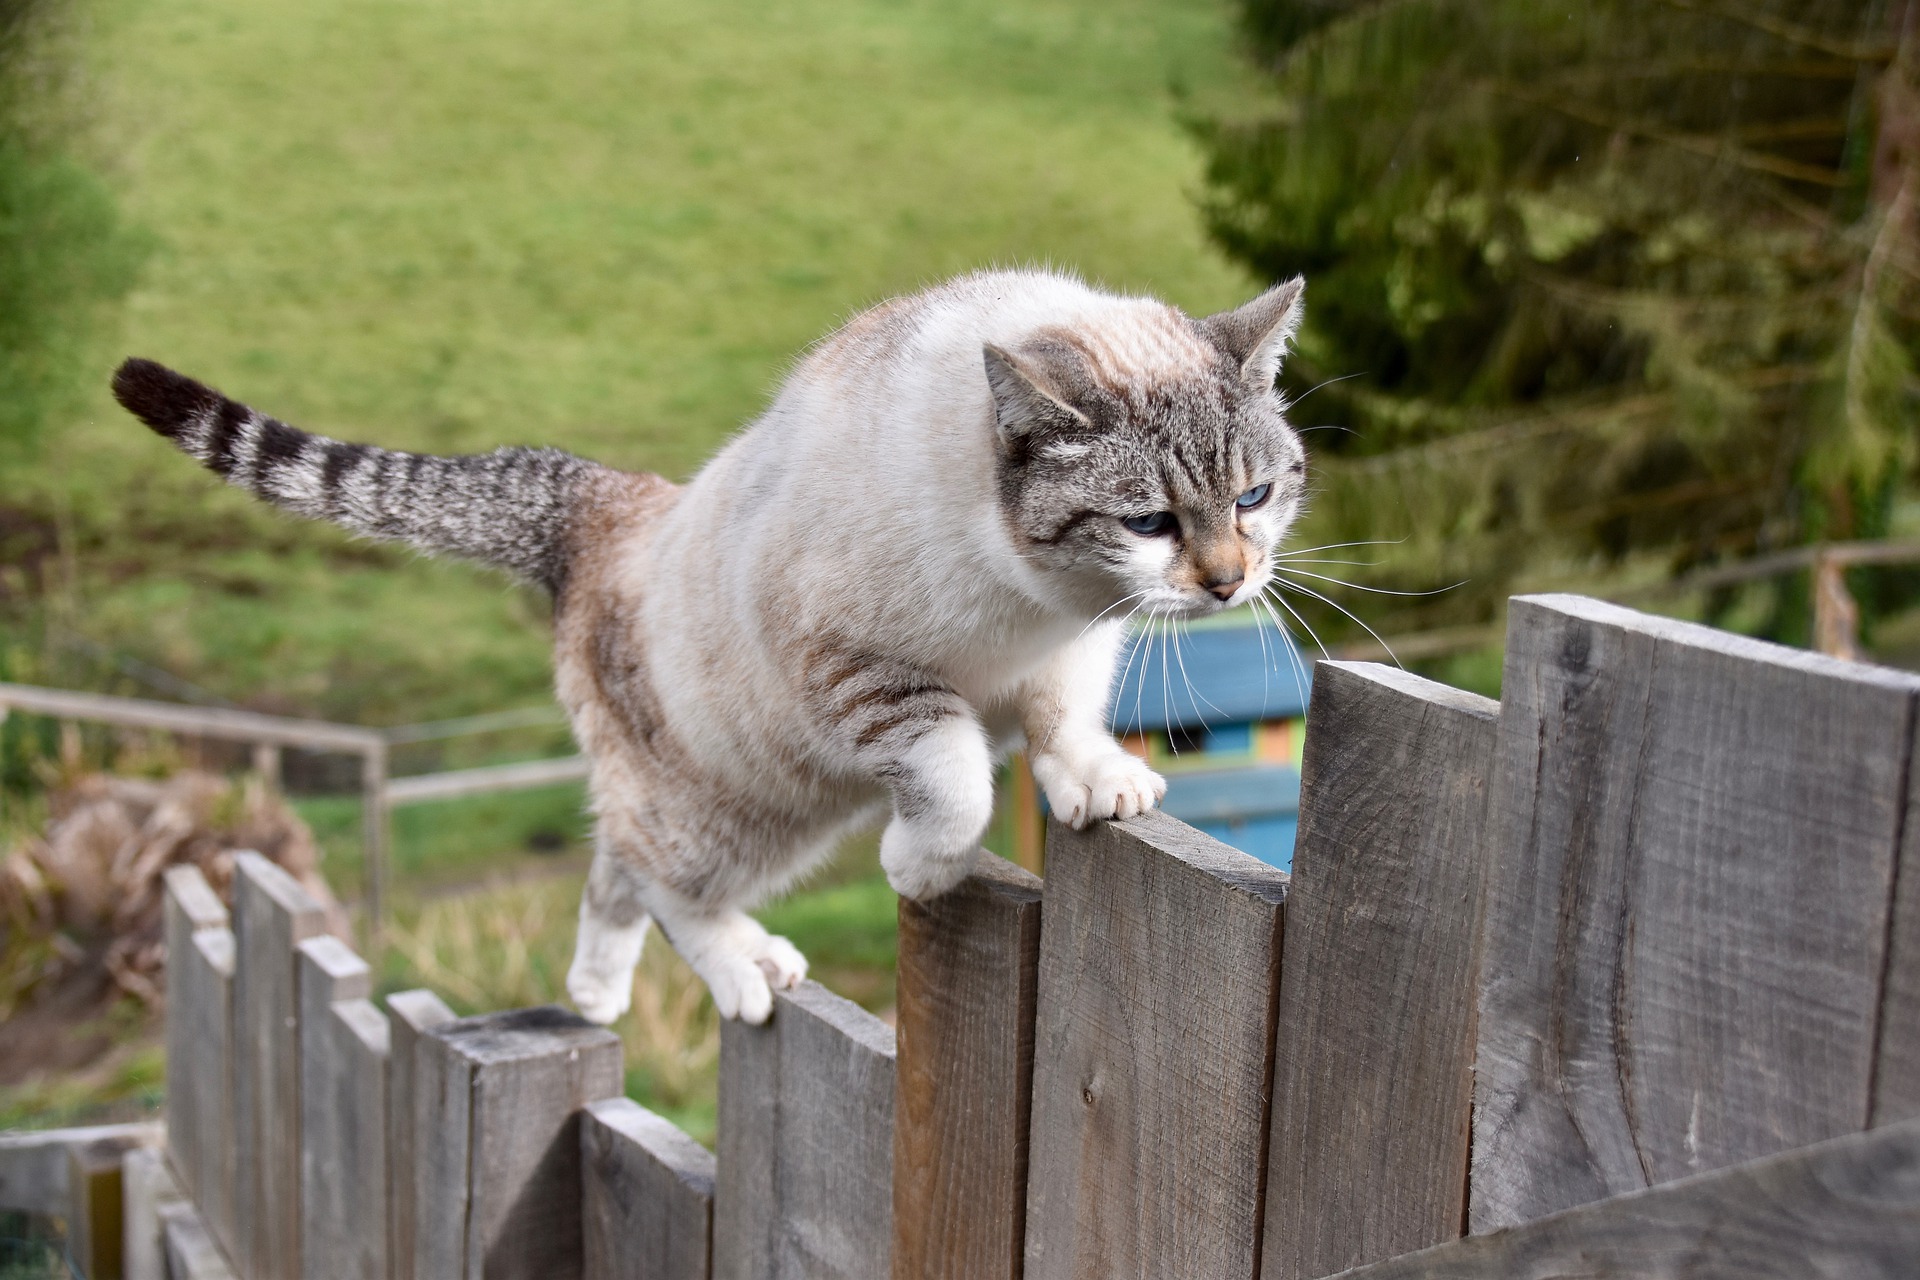 Kot kuleje z różnych przyczyn, najczęściej spotyka to koty wychodzące bez nadzoru. Skaleczenia mogą jednak zdarzyć się nawet w domu, np. podczas skoku z dużej wysokości, nadepnięcia na odłamek szkła czy przydepnięcie.